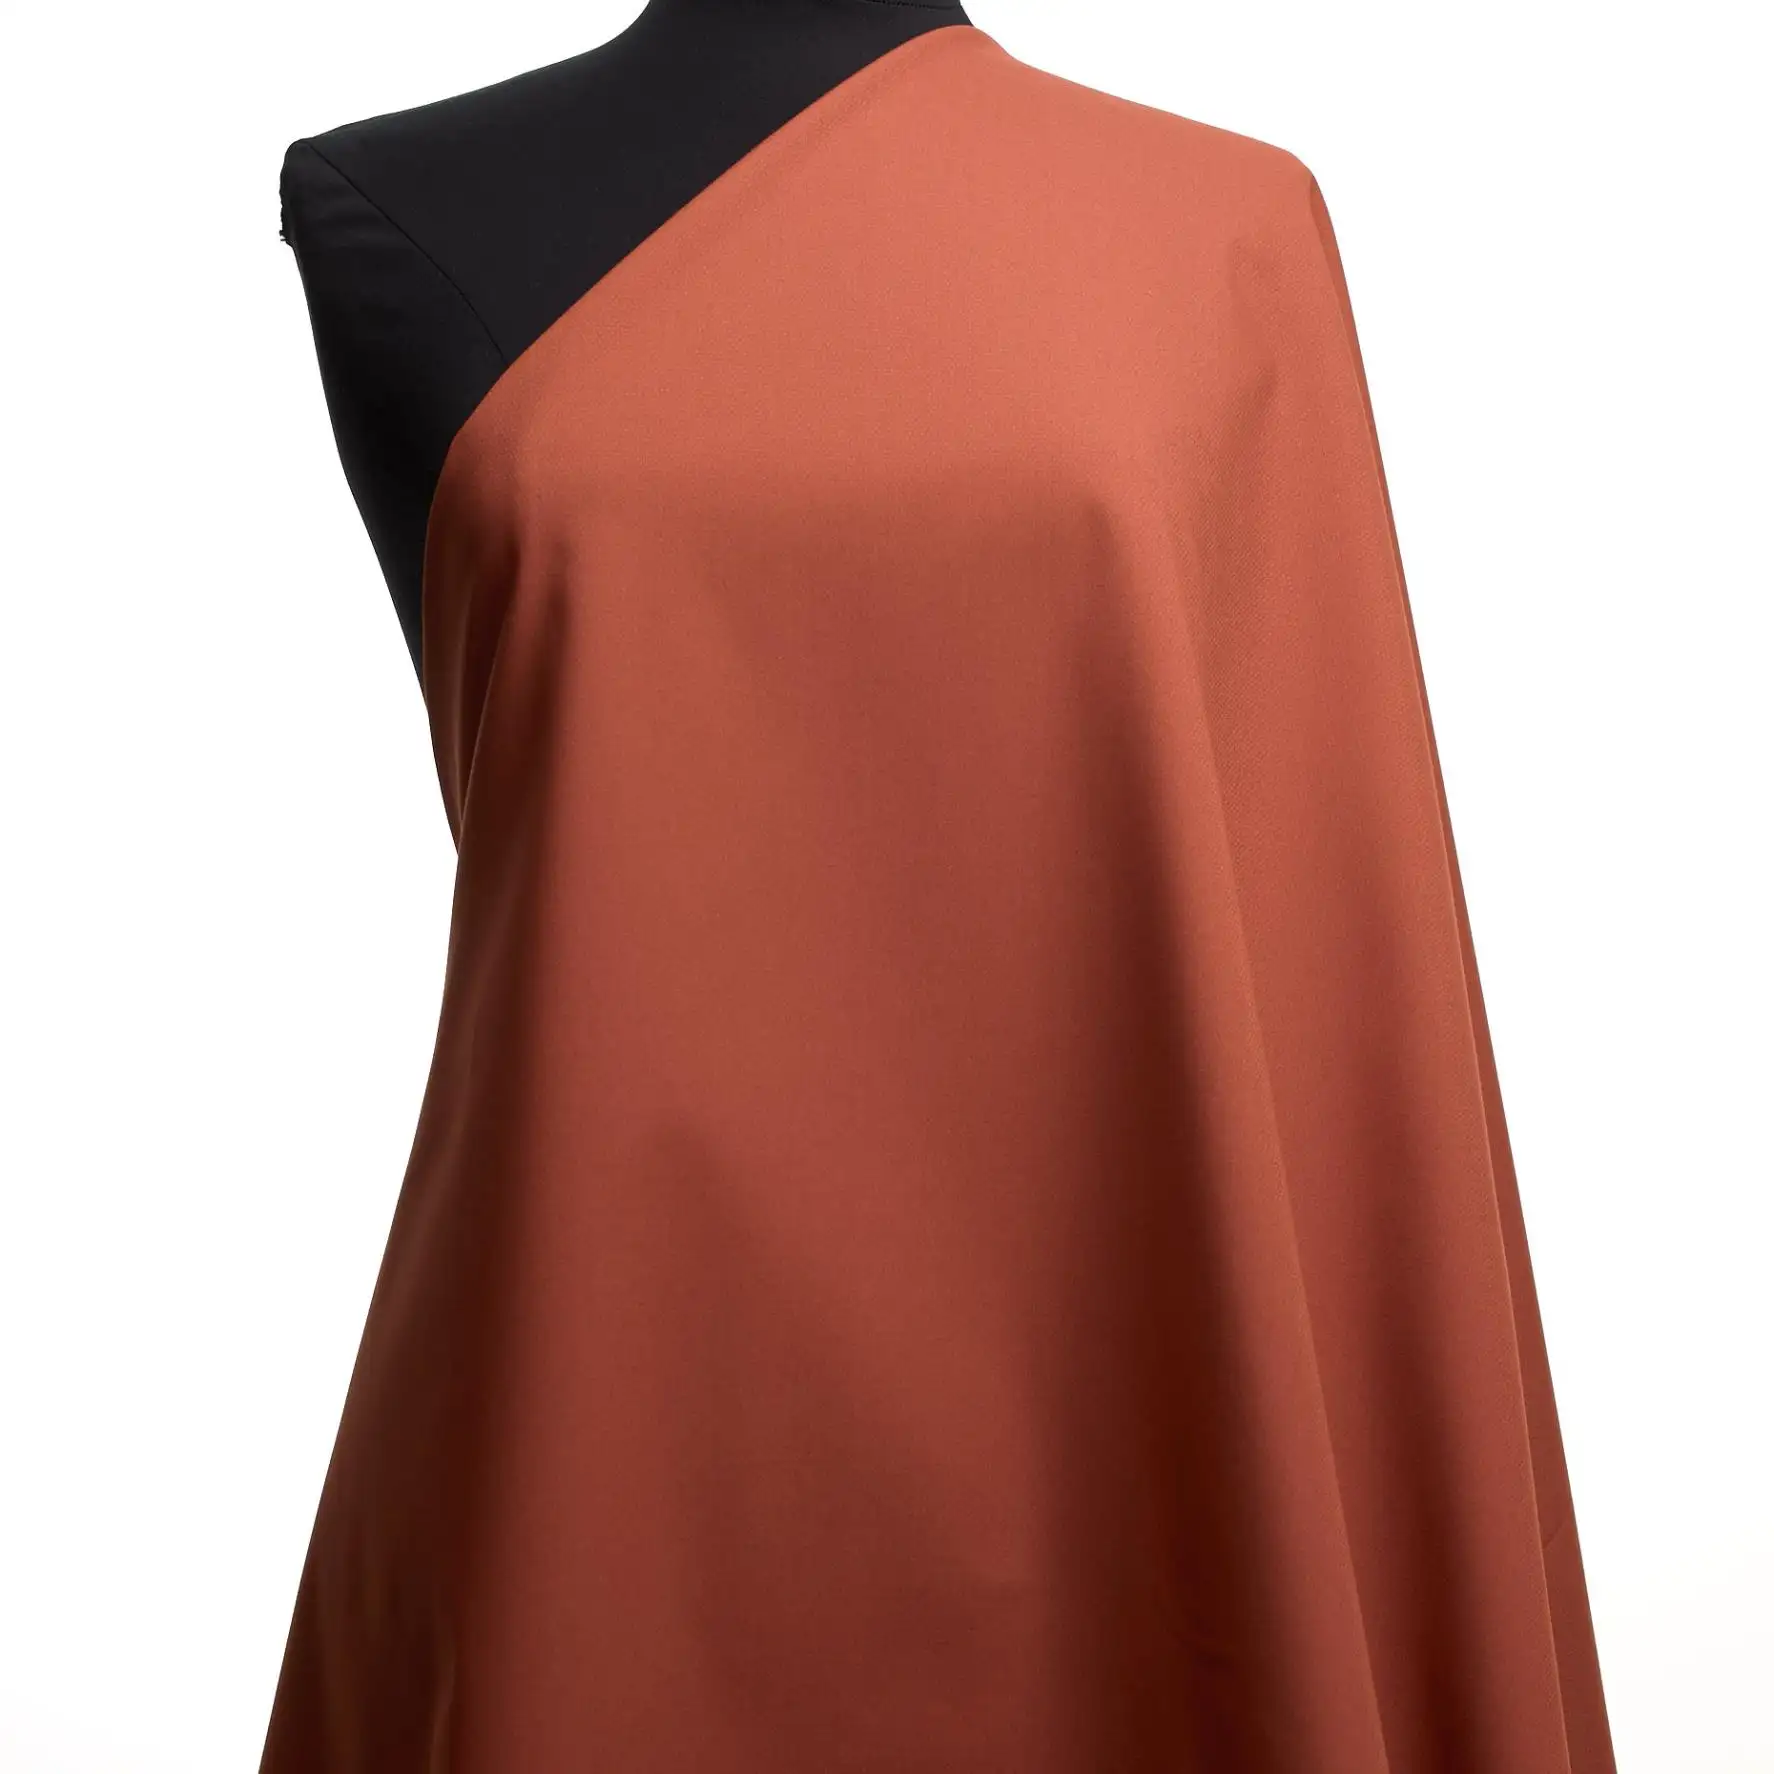 ผ้า Deadstock ที่ยั่งยืนและมีคุณภาพพรีเมี่ยม: ผ้าฝ้ายยืดหยุ่นในสีแดง: เฉดสีของผ้าสีชมพูและสีแดงสำหรับกางเกง